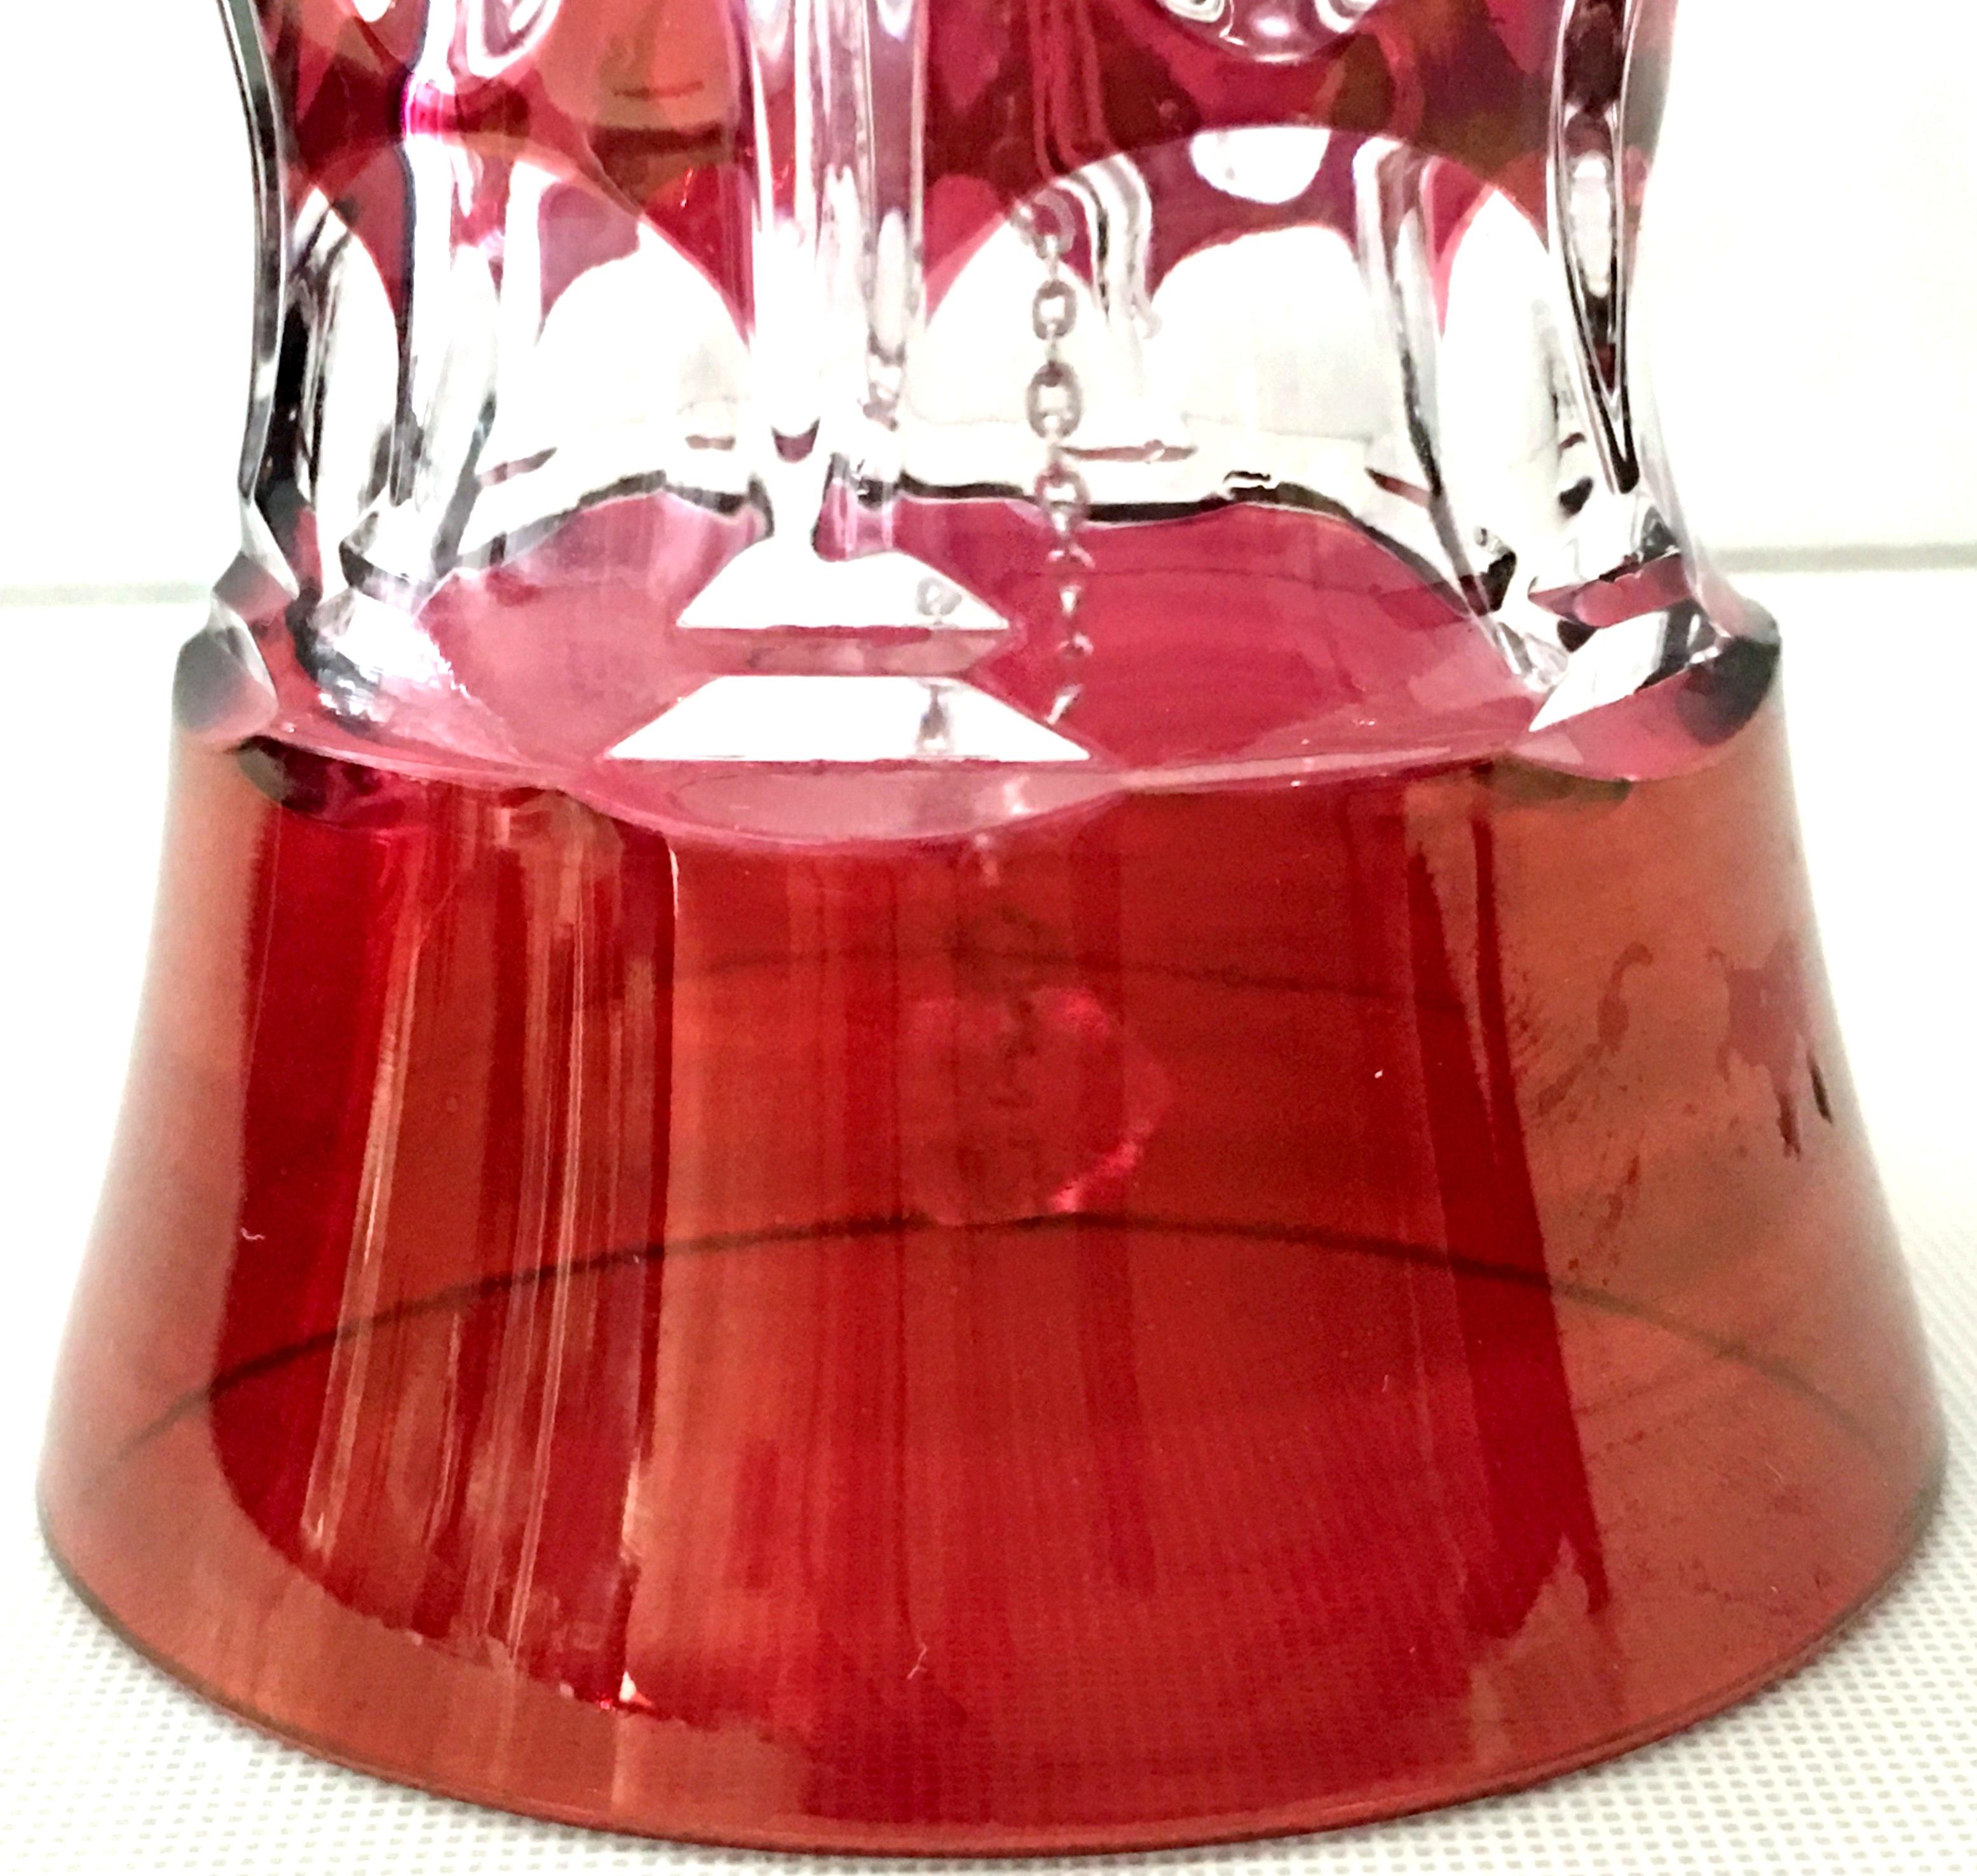 waterford crystal vase